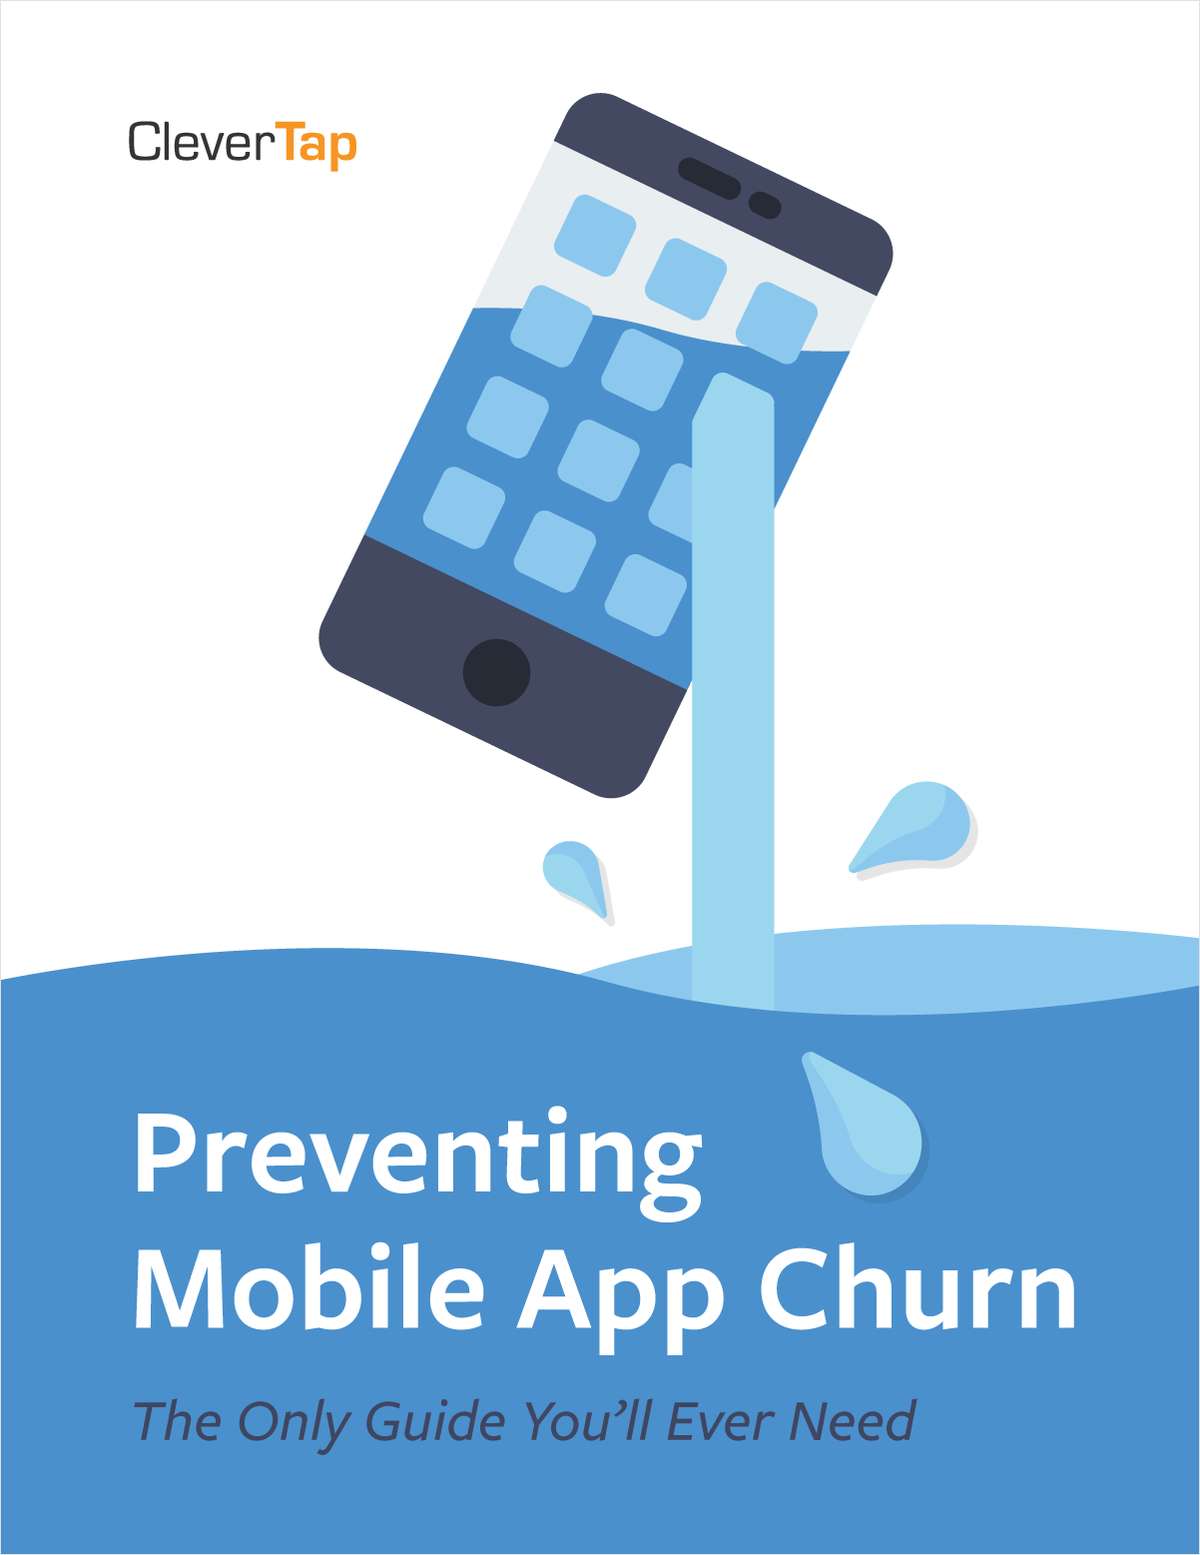 Preventing Mobile App Churn